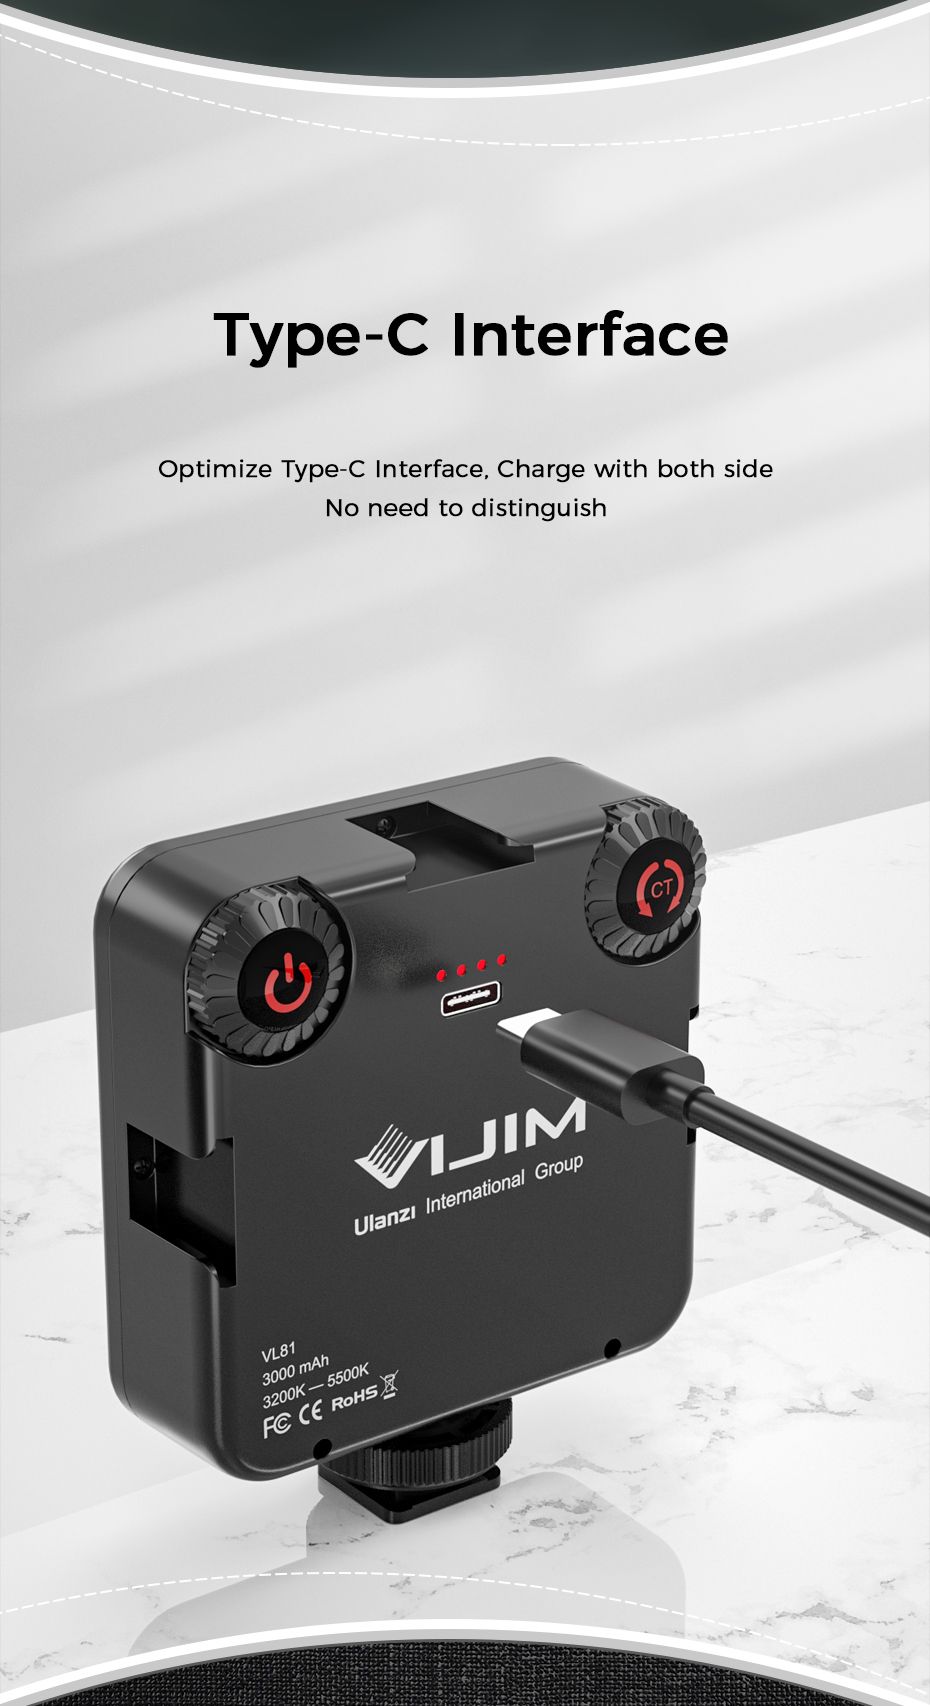 VIJIM-VL81-3200k-5600K-850LM-65W-Dimmable-Mini-Portable-Vlog-Fill-Light-LED-Video-Light-With-Cold-Sh-1709841